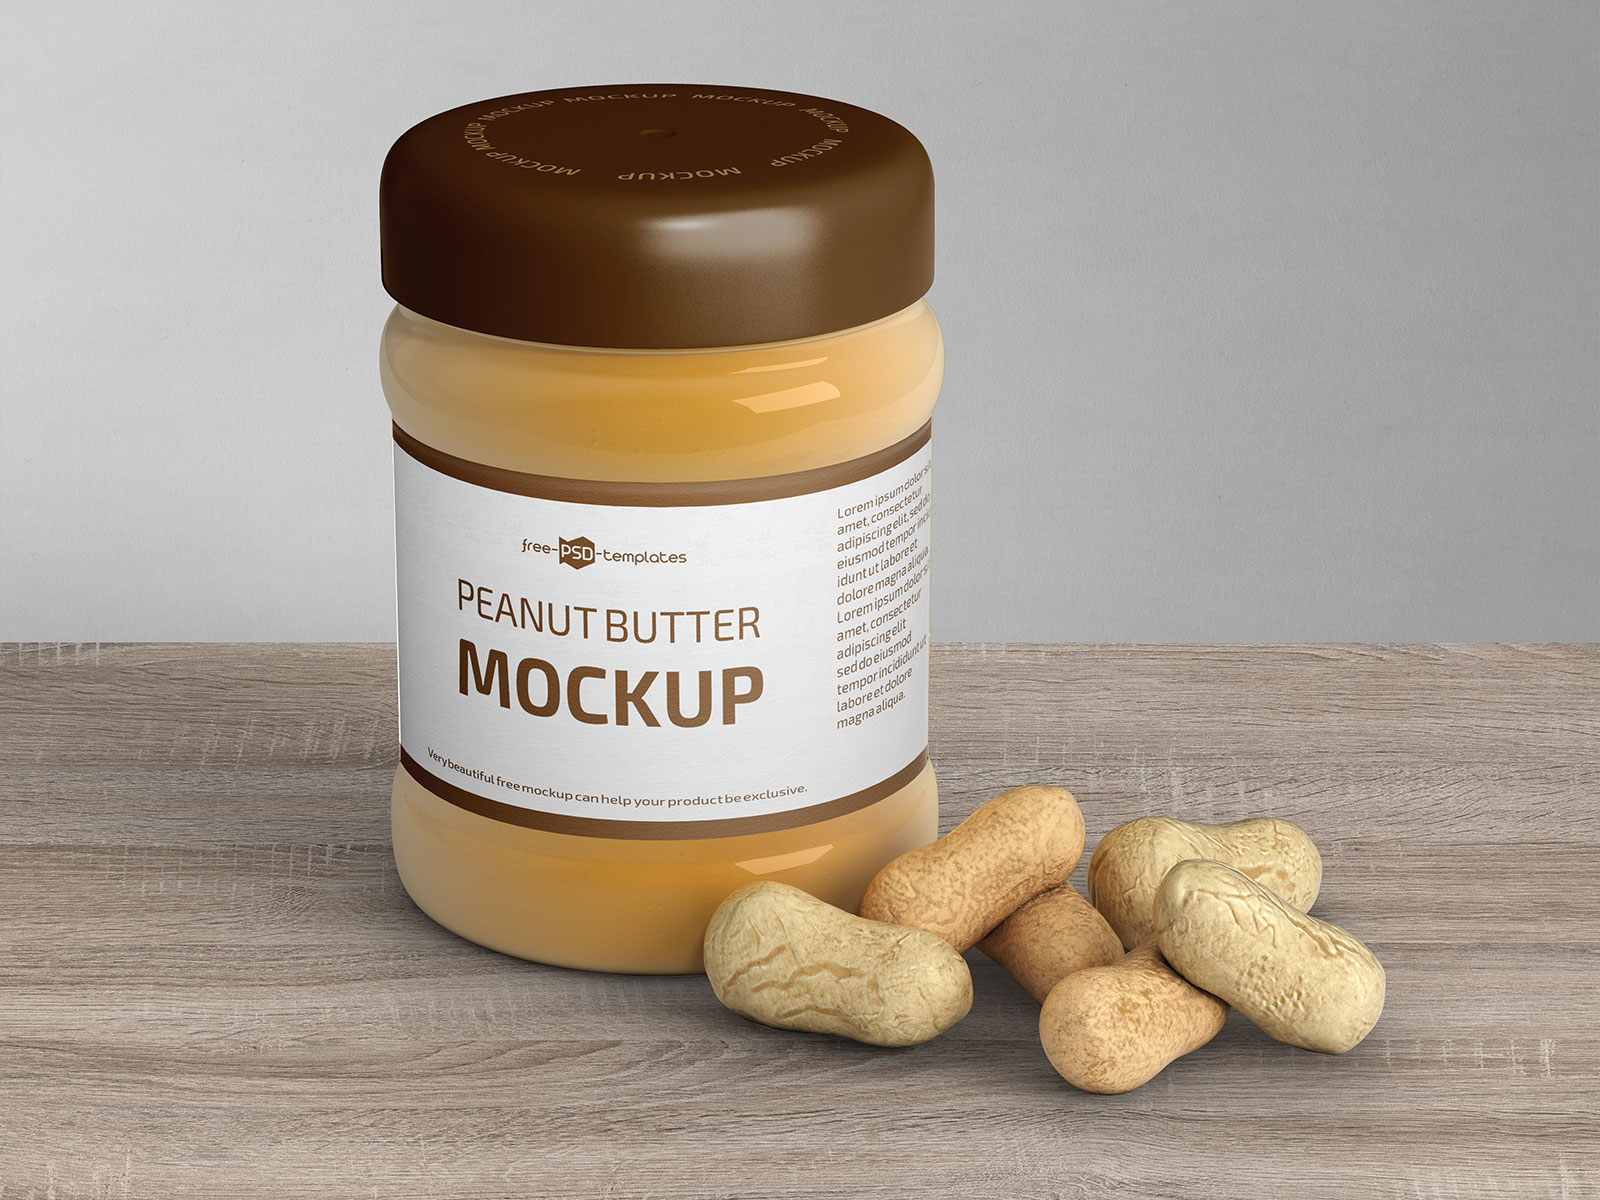 Free-Peanut_Butter_Jar-Mockup-PSD-Set